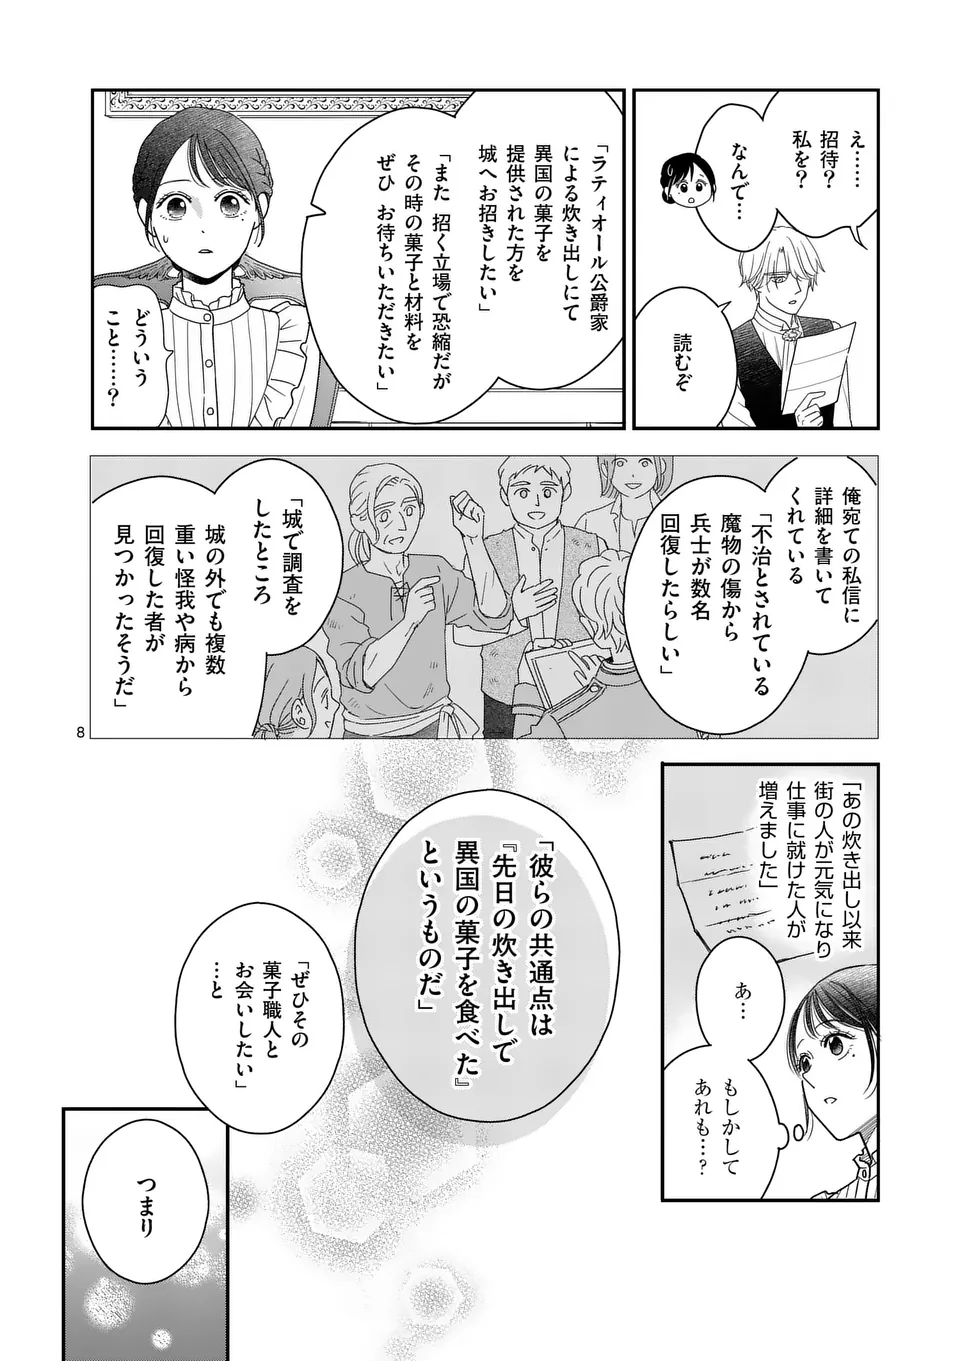 Makizoe de Isekai ni Yobidasareta no de, Sekai Kanmushi shite Wagashi Tsukurimasu - Chapter 7.1 - Page 8